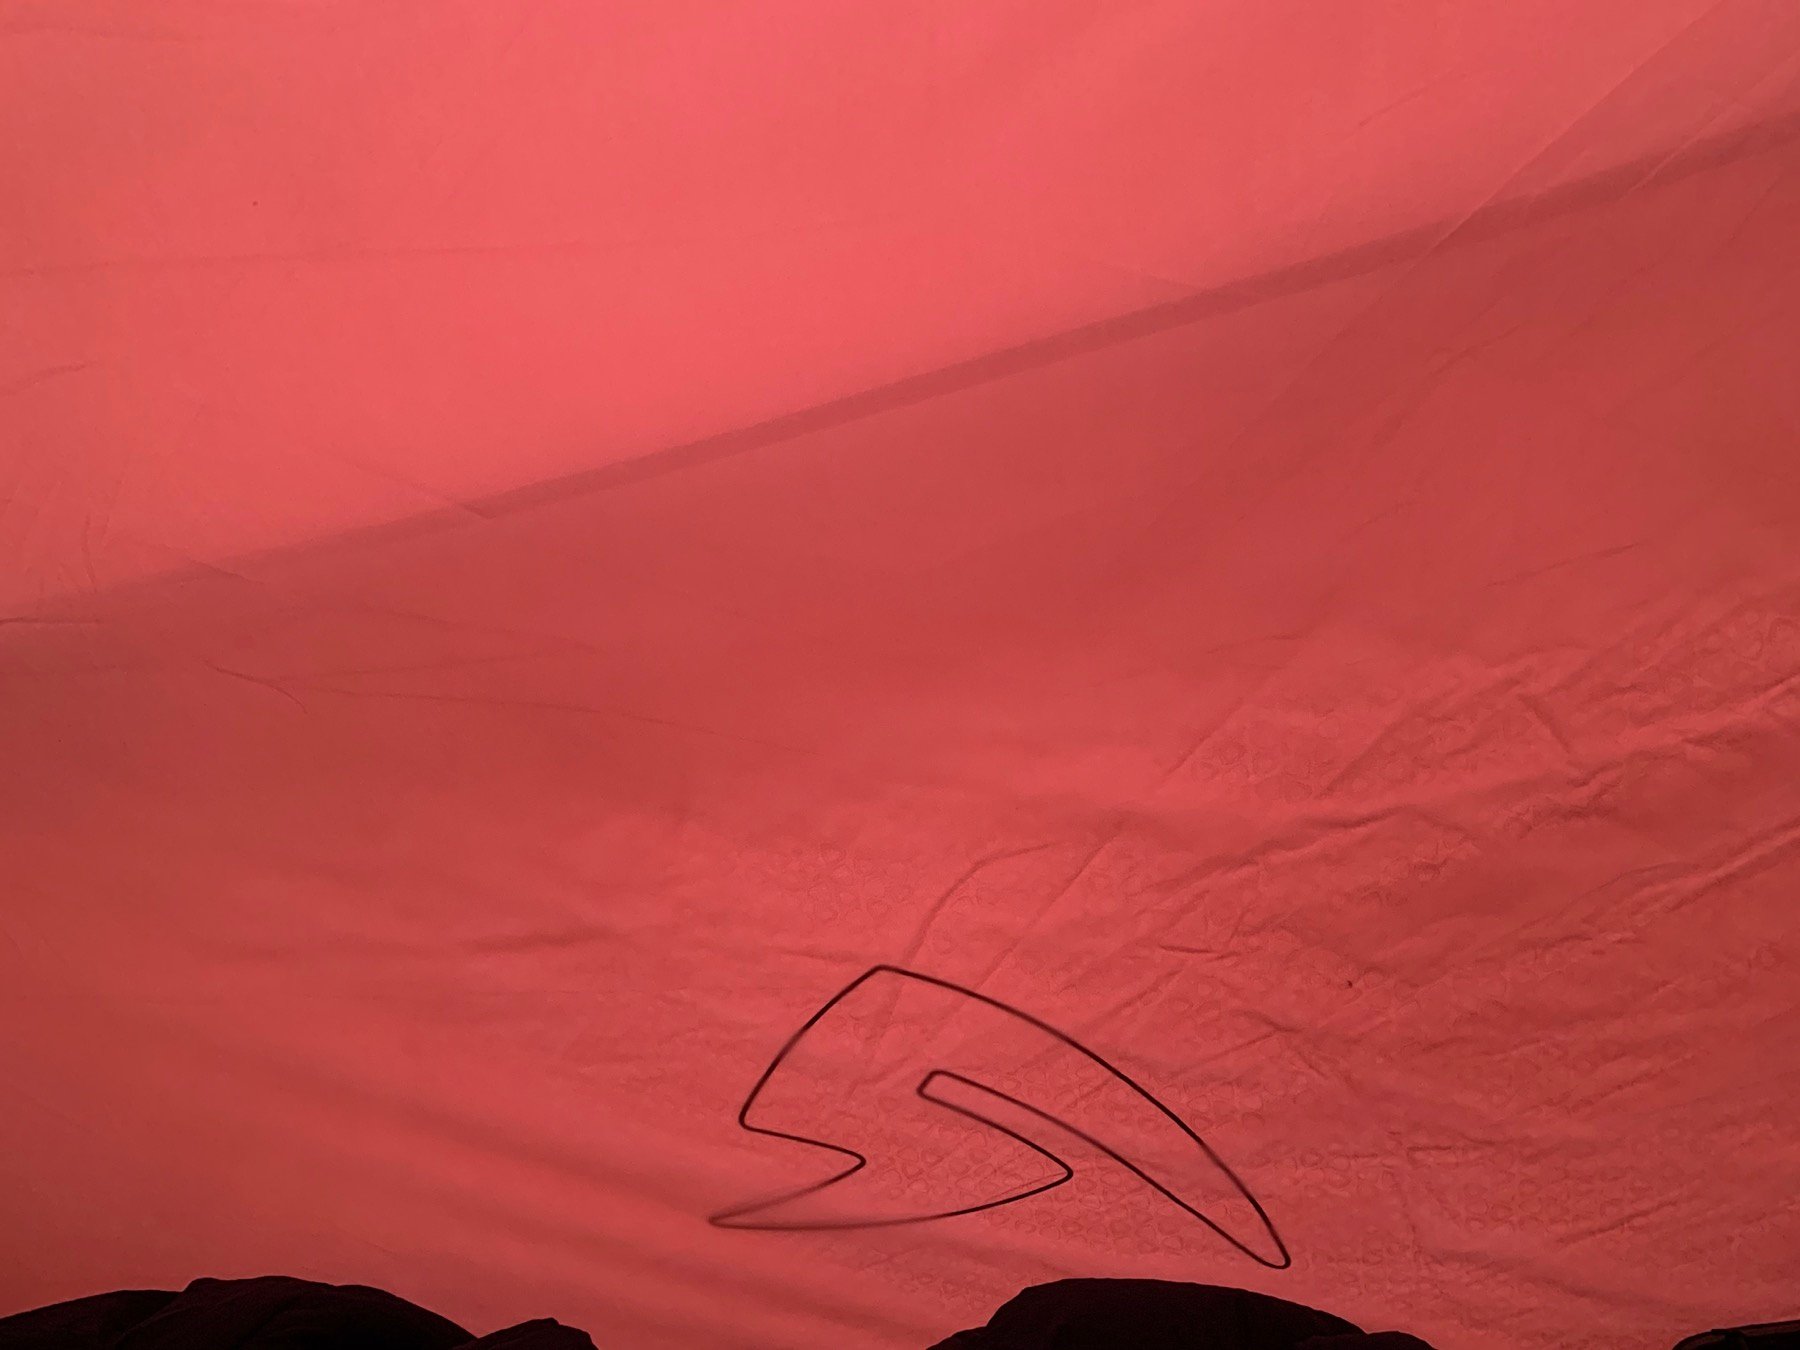 The inner tent